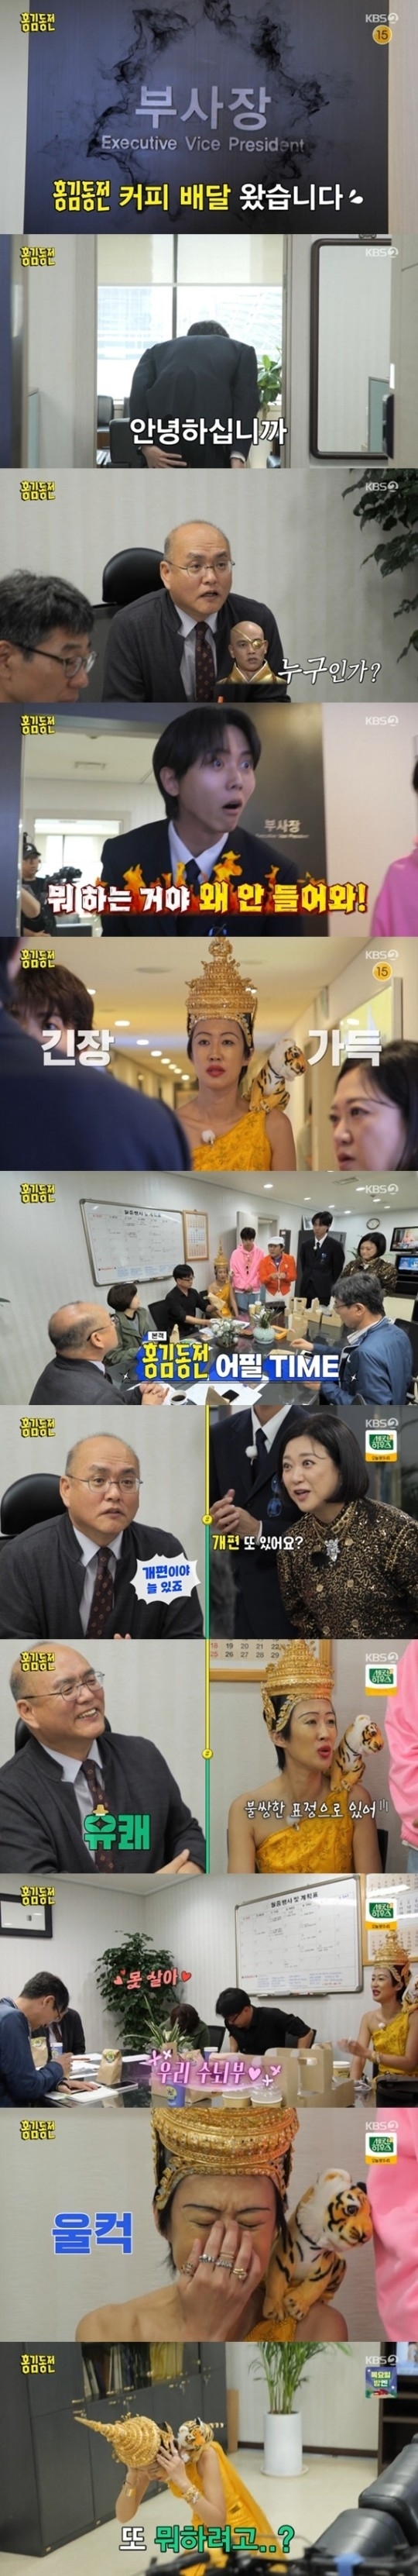 KBS 2TV 예능 프로그램 ‘홍김동전’